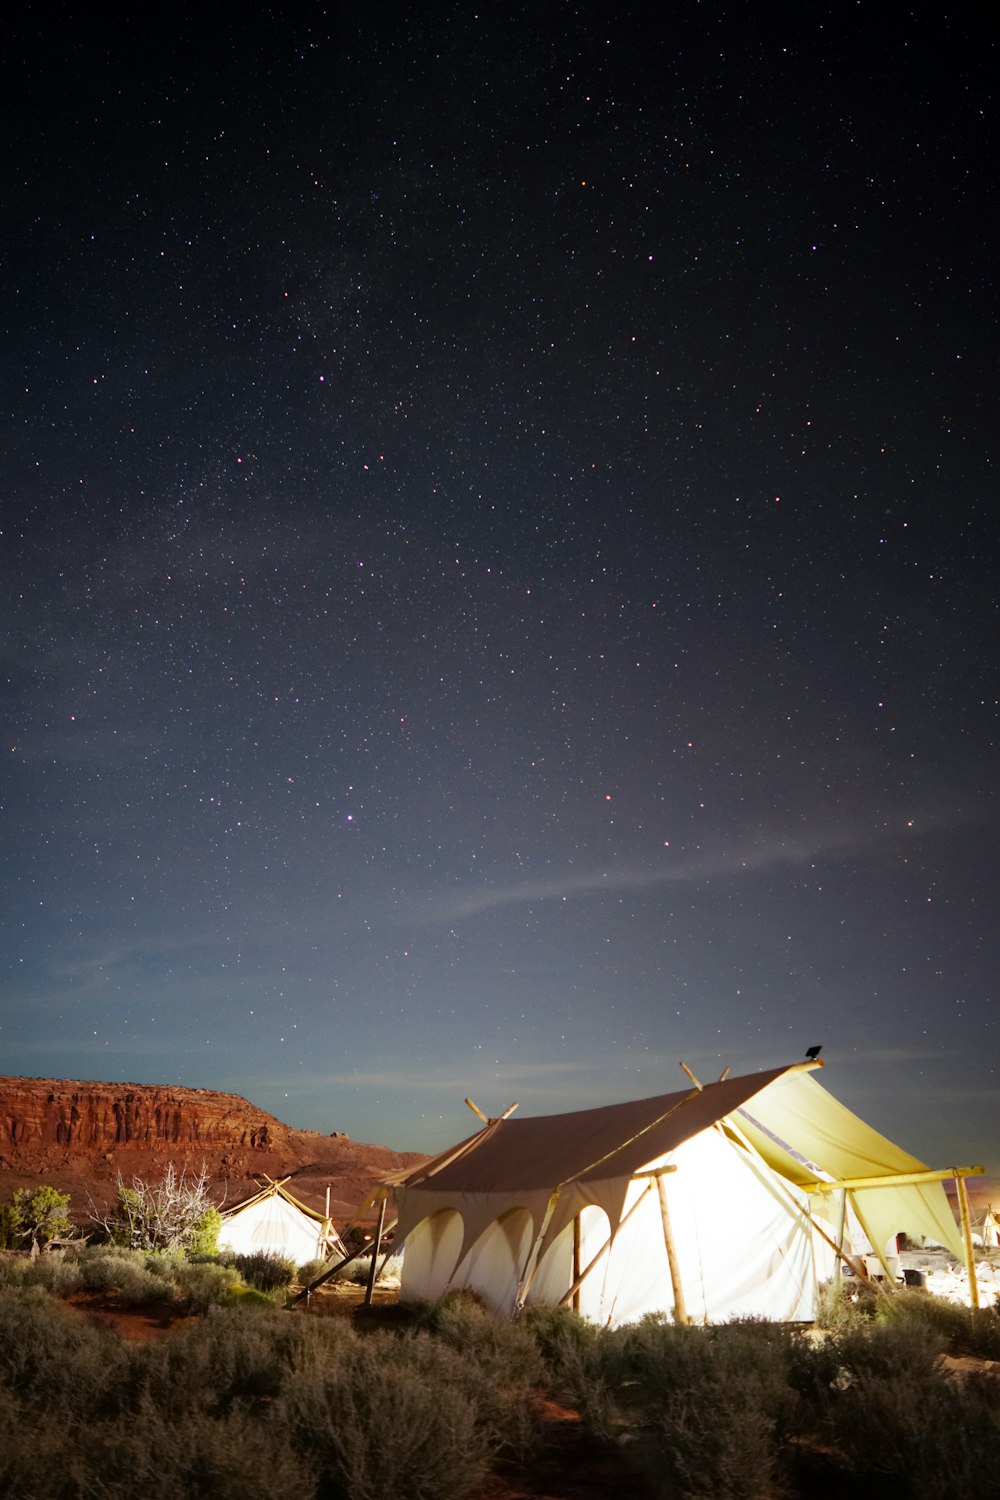 야간에 열린 들판에 흰색 오두막 텐트